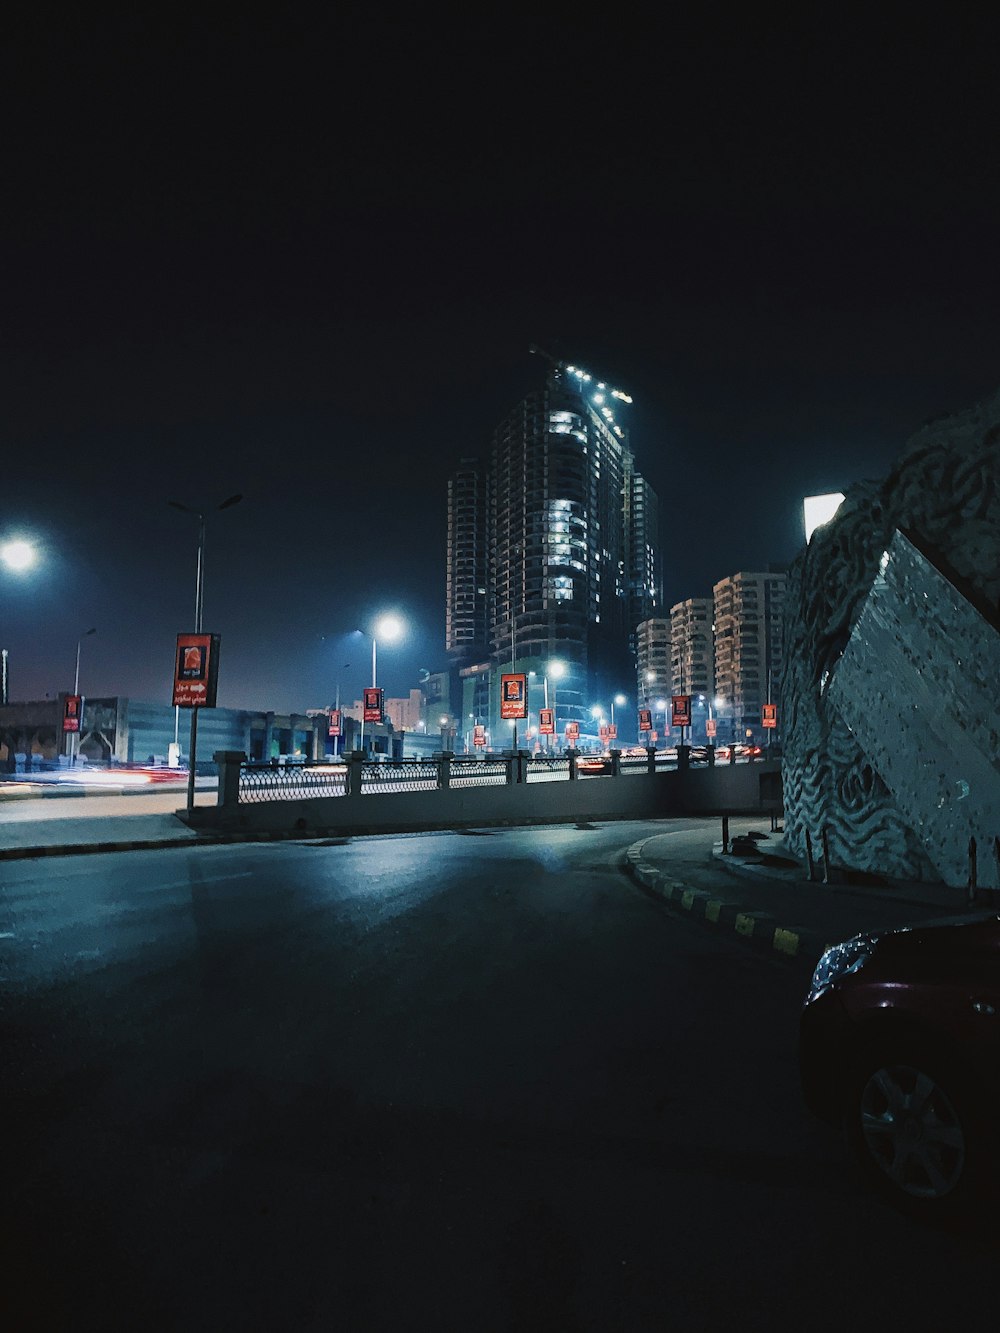 Voitures sur la route près des bâtiments de la ville pendant la nuit